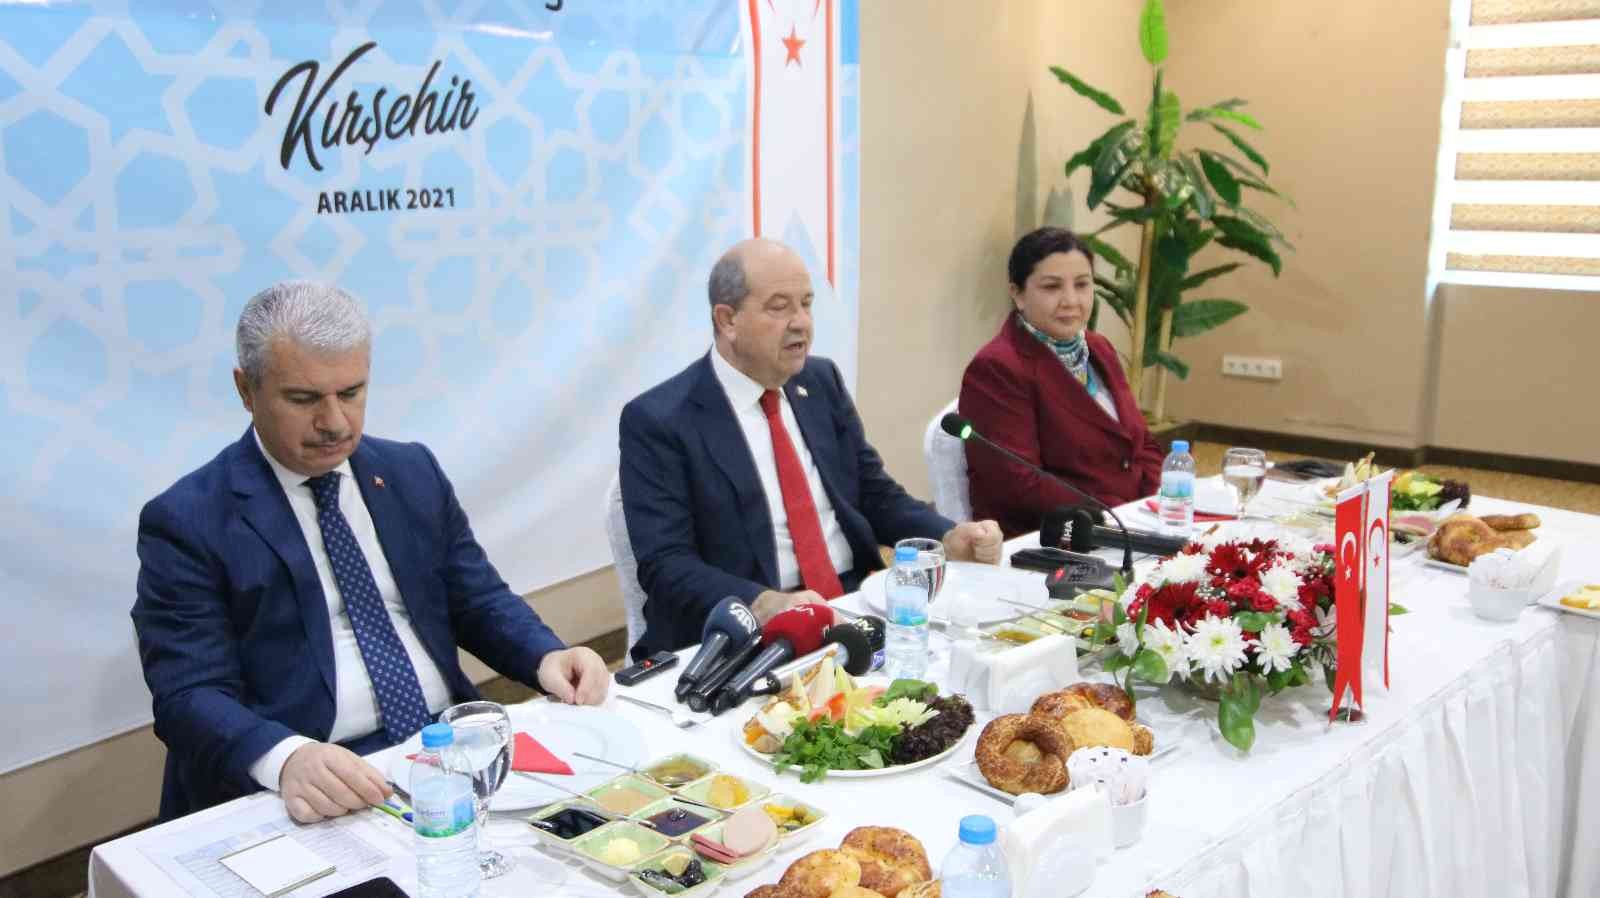 KKTC Cumhurbaşkanı Tatar: “Türk ekonomisinin güçlü olması Kıbrıs’tan görülüyor #kirsehir